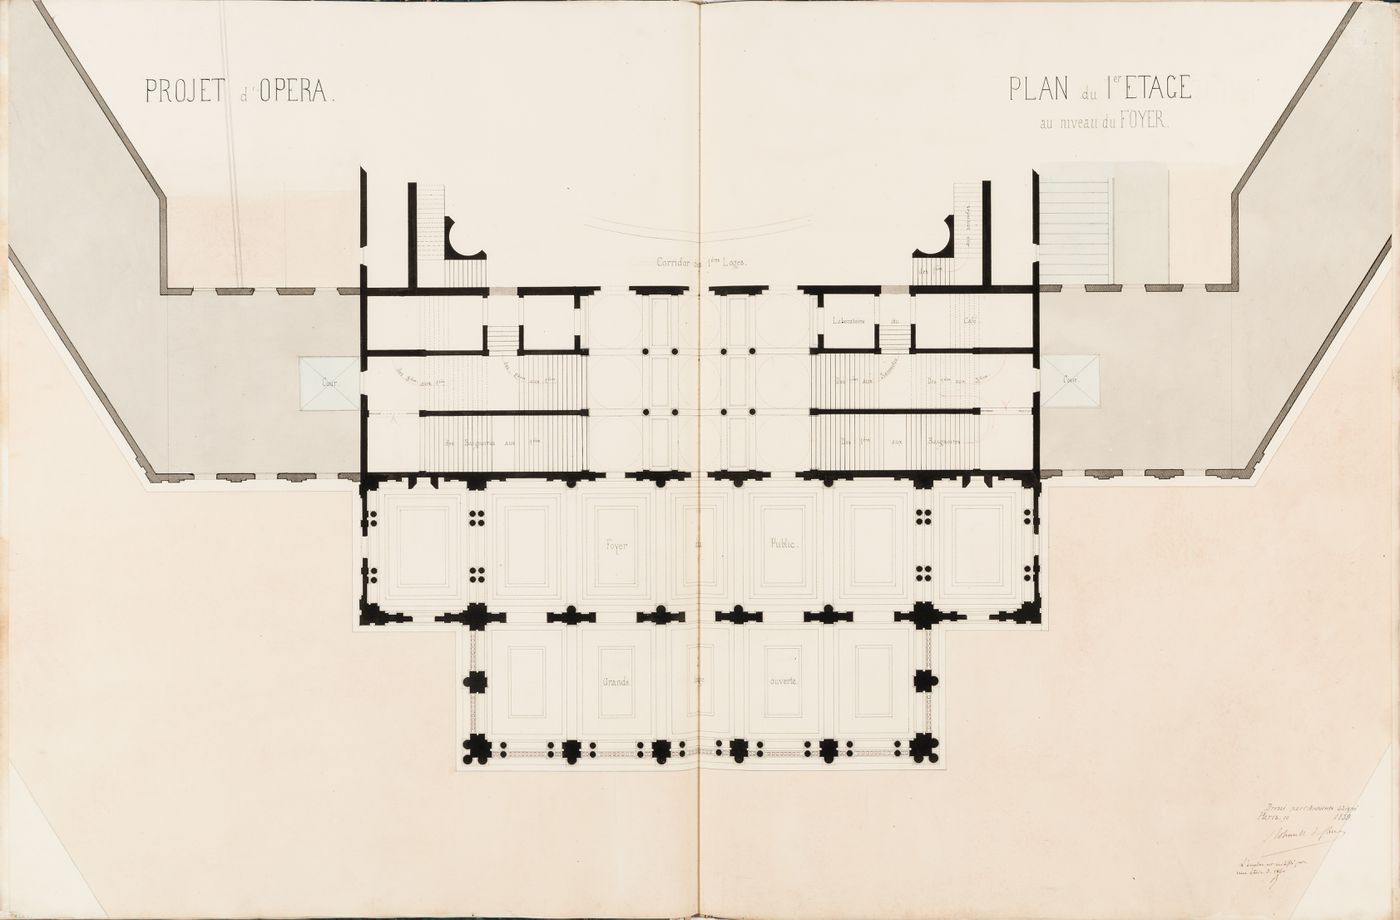 Project for an opera house for the Théâtre impérial de l'opéra: First floor plan "au niveau du foyer"